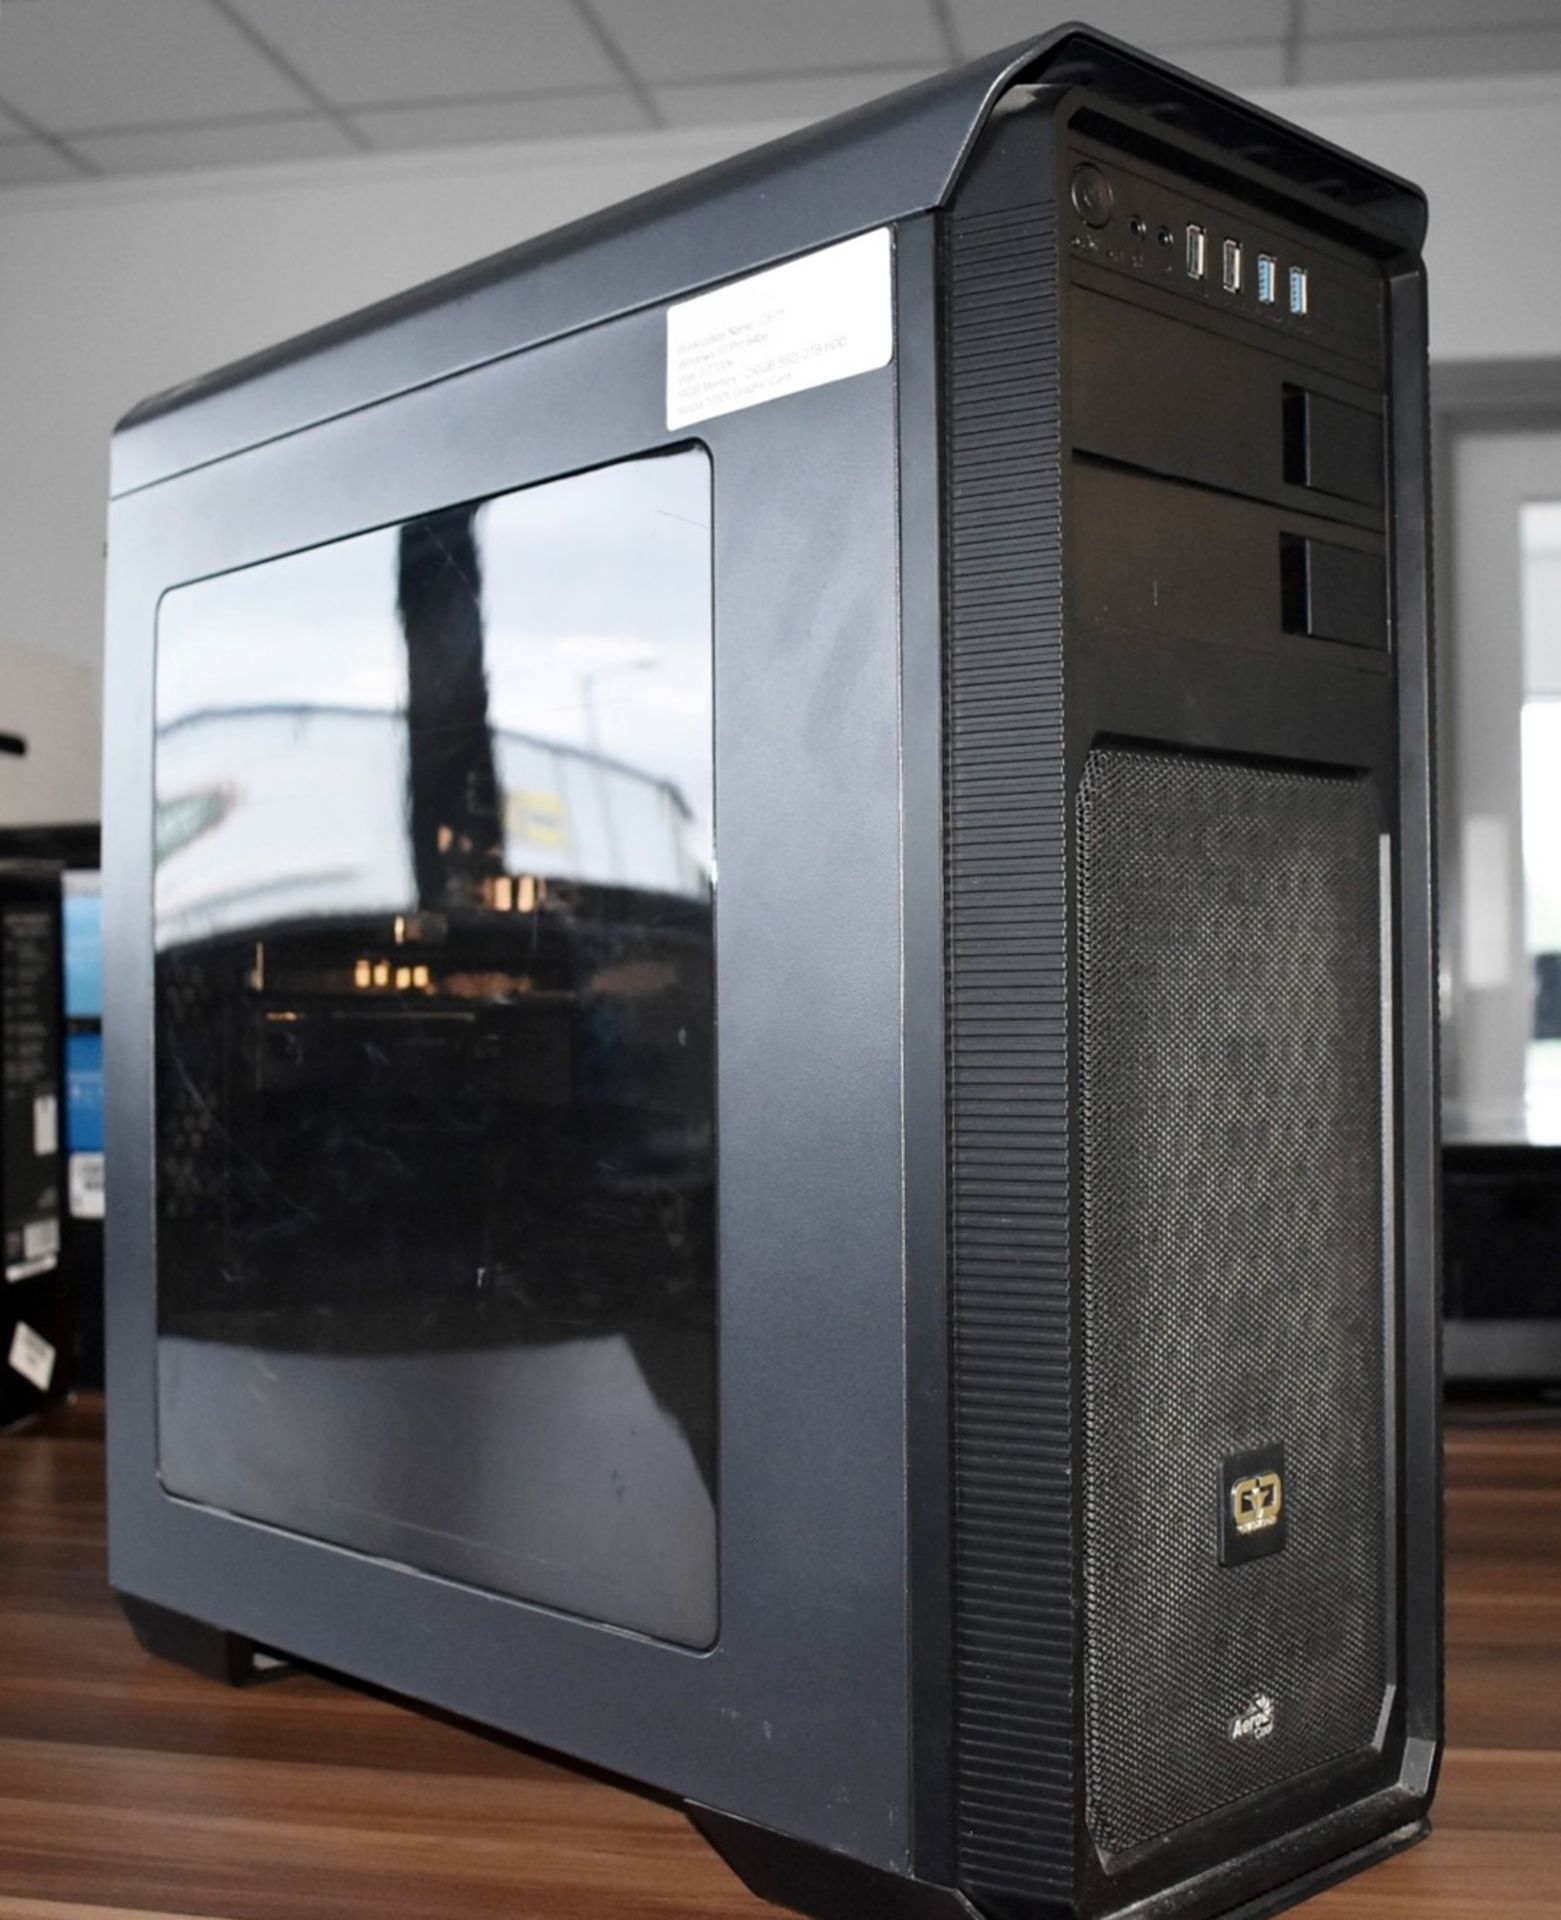 1 x Desktop Computer Featuring an Intel i7-7700k Processor, Asus USB 3.0 Motherboard, 16GB Corsair